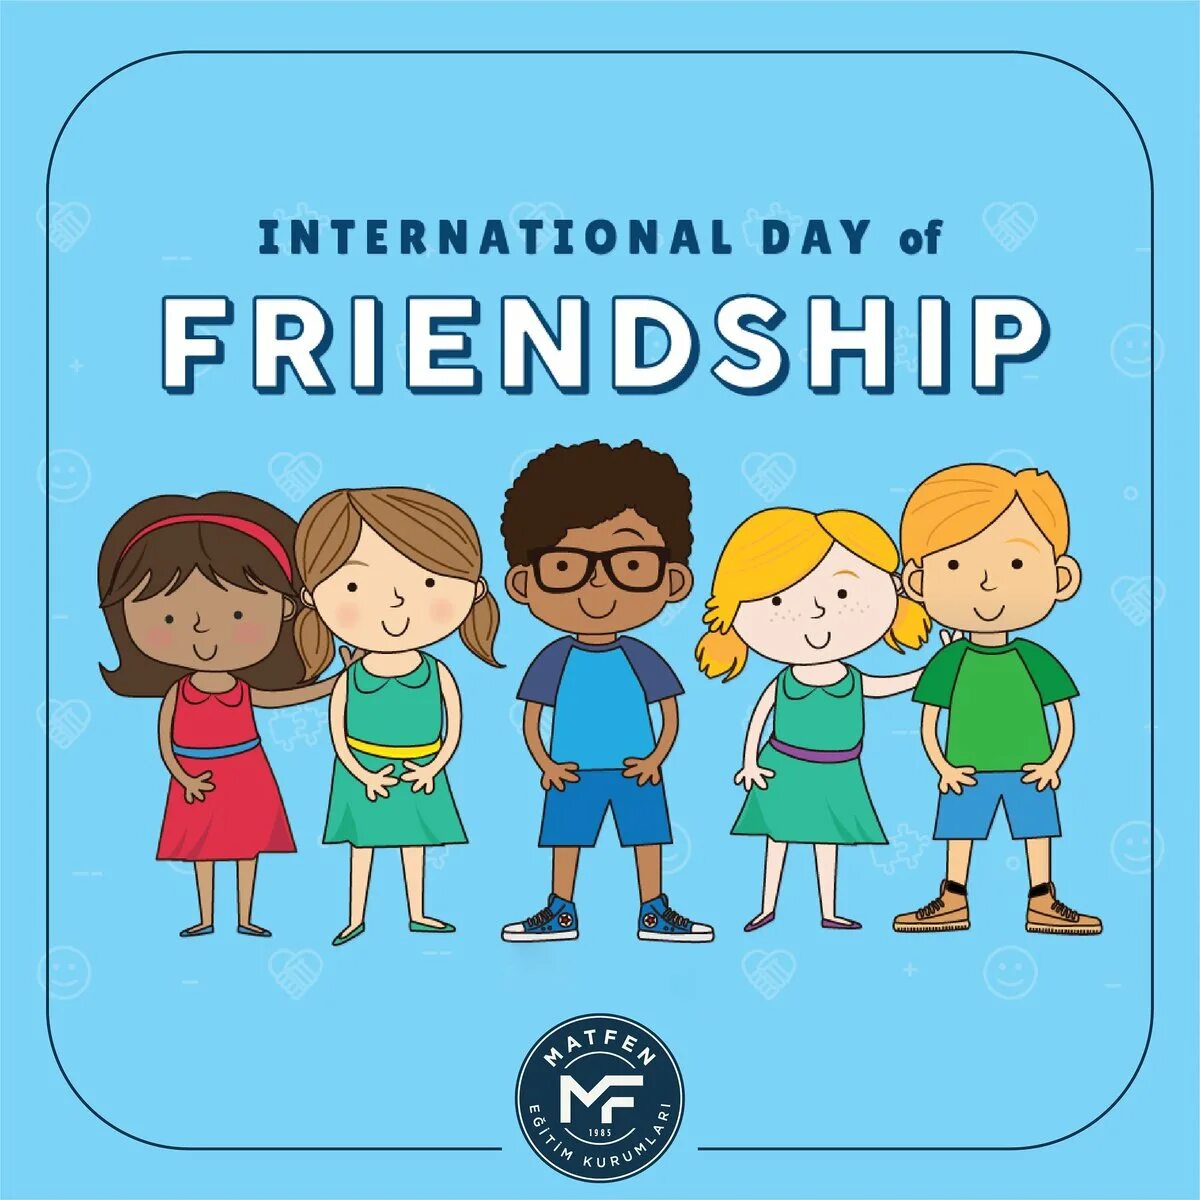 International friends Day. International friends Day 9 June. National Friendship Day. Happy International Friendship Day. We your new friends